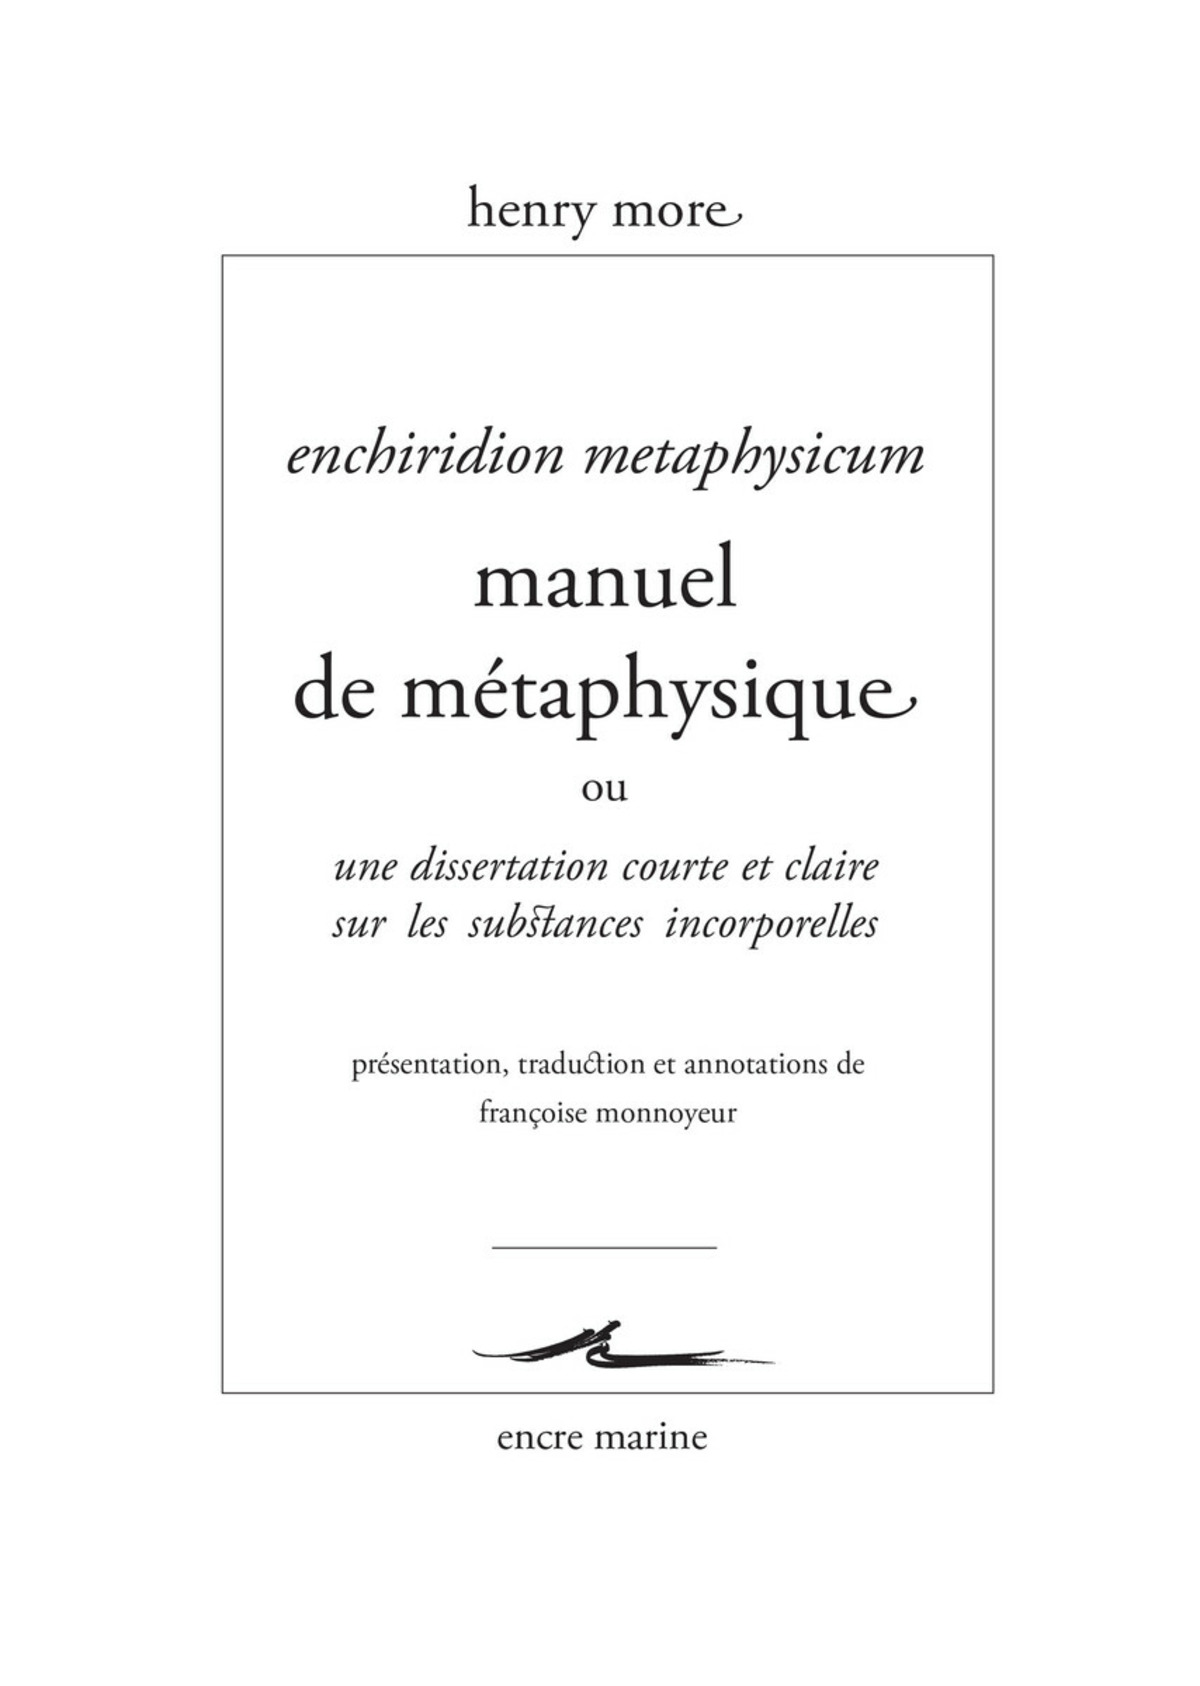 Manuel de métaphysique